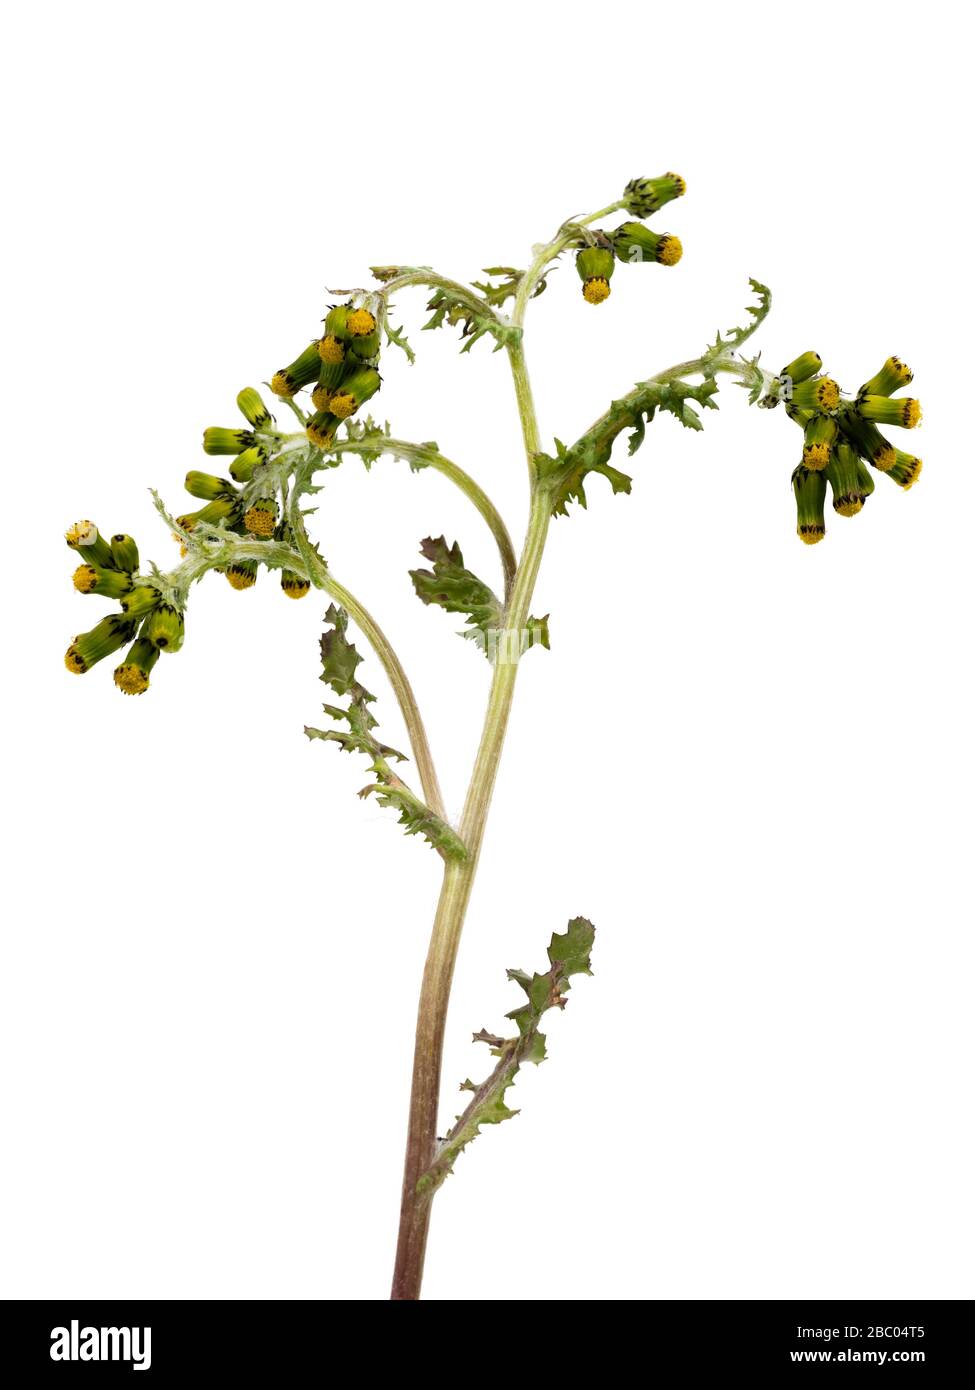 Fleurs et feuillage des espèces annuelles de mauvaises herbes britanniques, Senecio vulgaris, fond blanc Banque D'Images